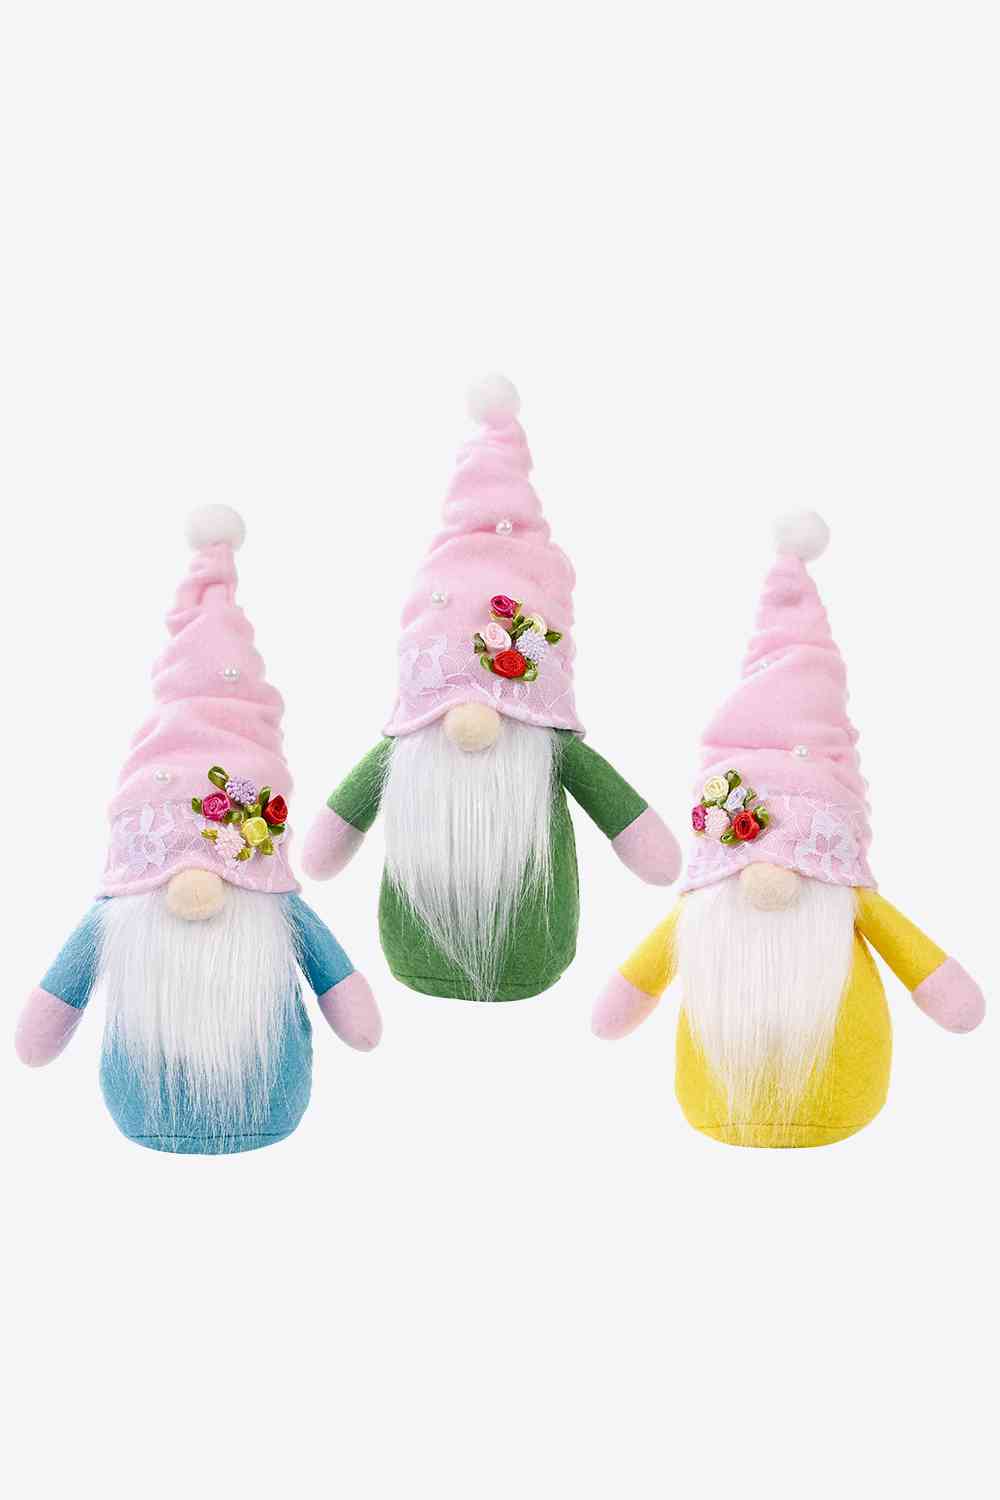 Random 3-Pac Faceless Gnomes